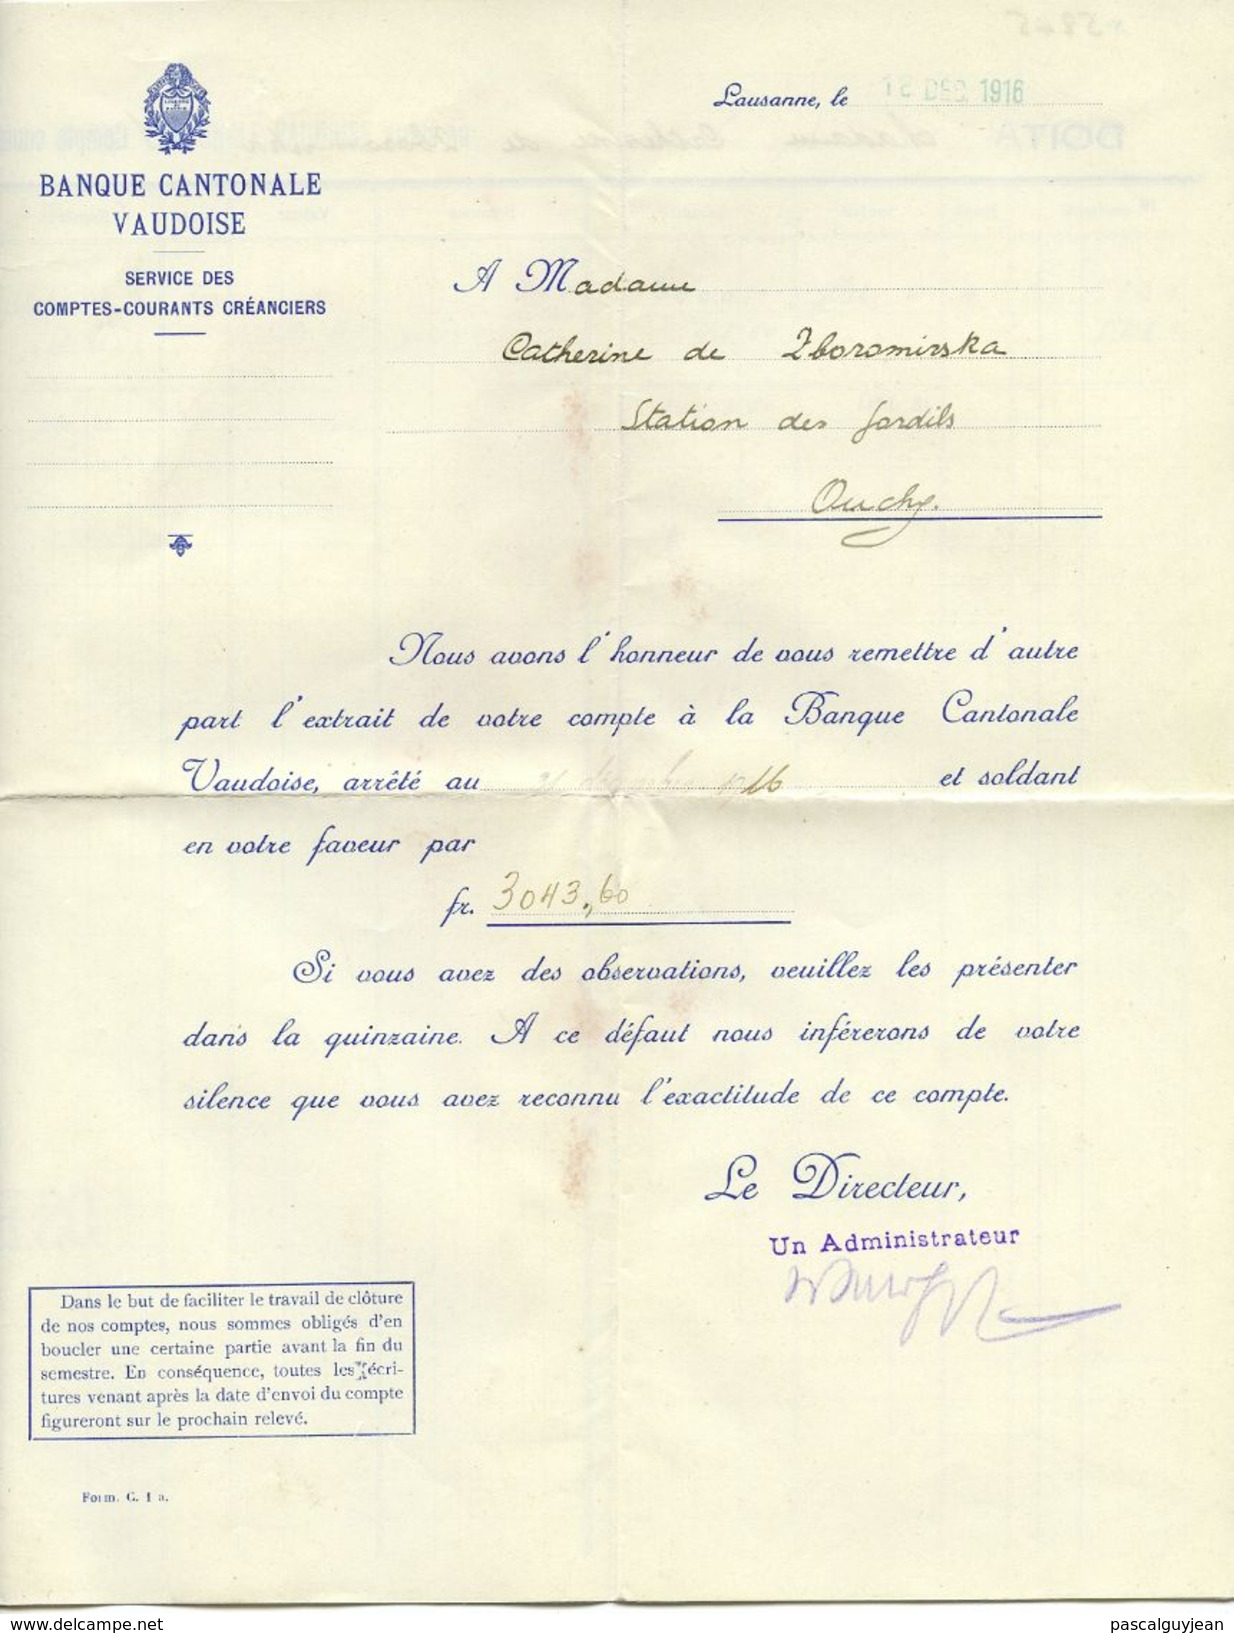 ENSEMBLE DE 27 DOCUMENTS BANQUE CANTONALE VAUDOISE, LAUSANNE - 1916 A 1922 - Switzerland